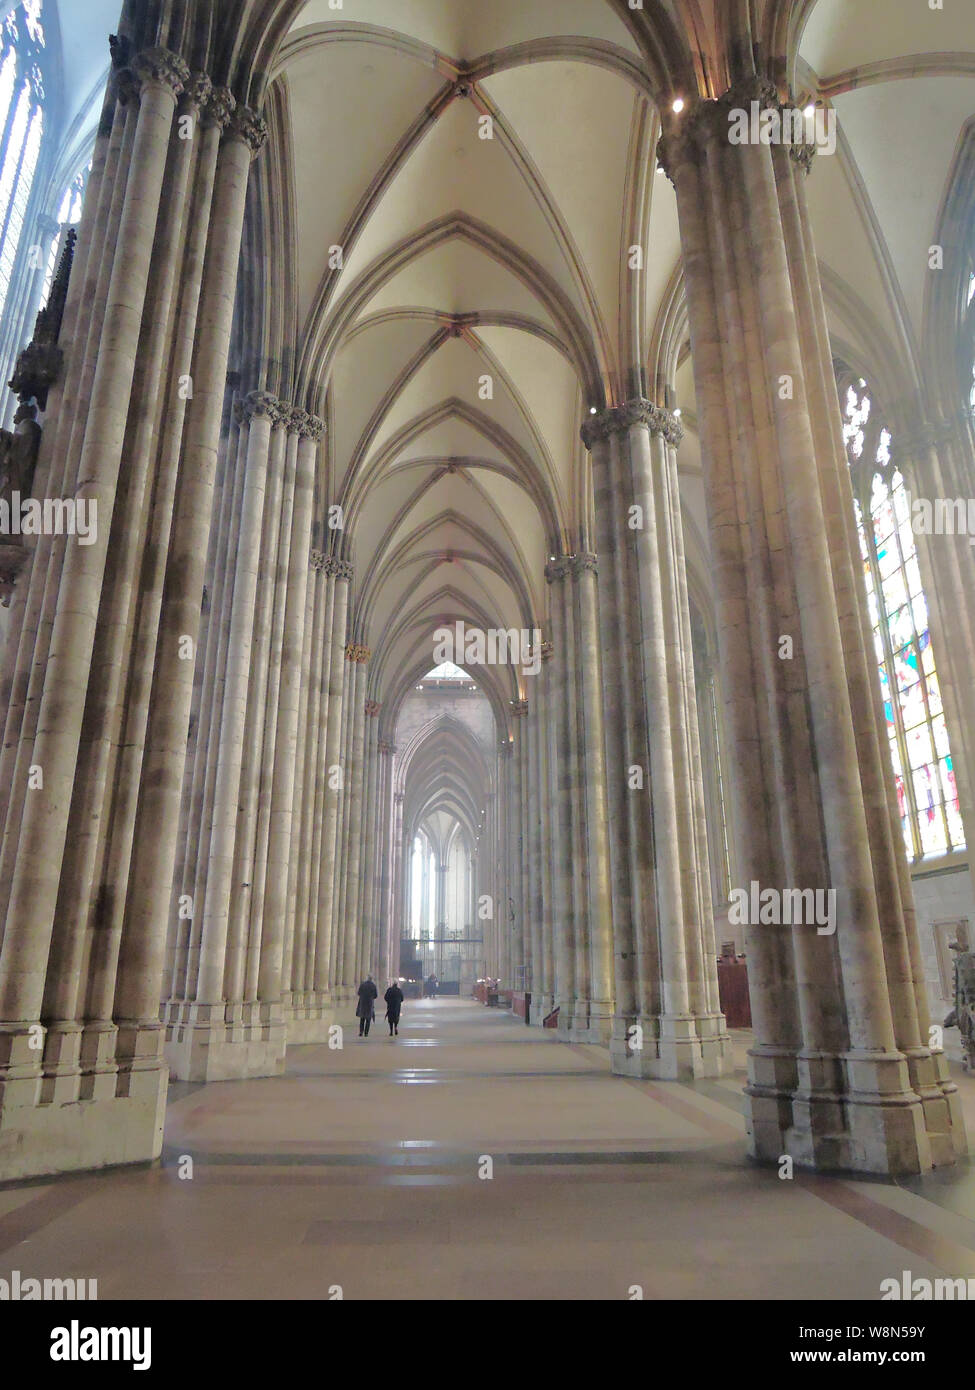 Intérieur de la cathédrale la plus haute du monde à Cologne, Allemagne Banque D'Images